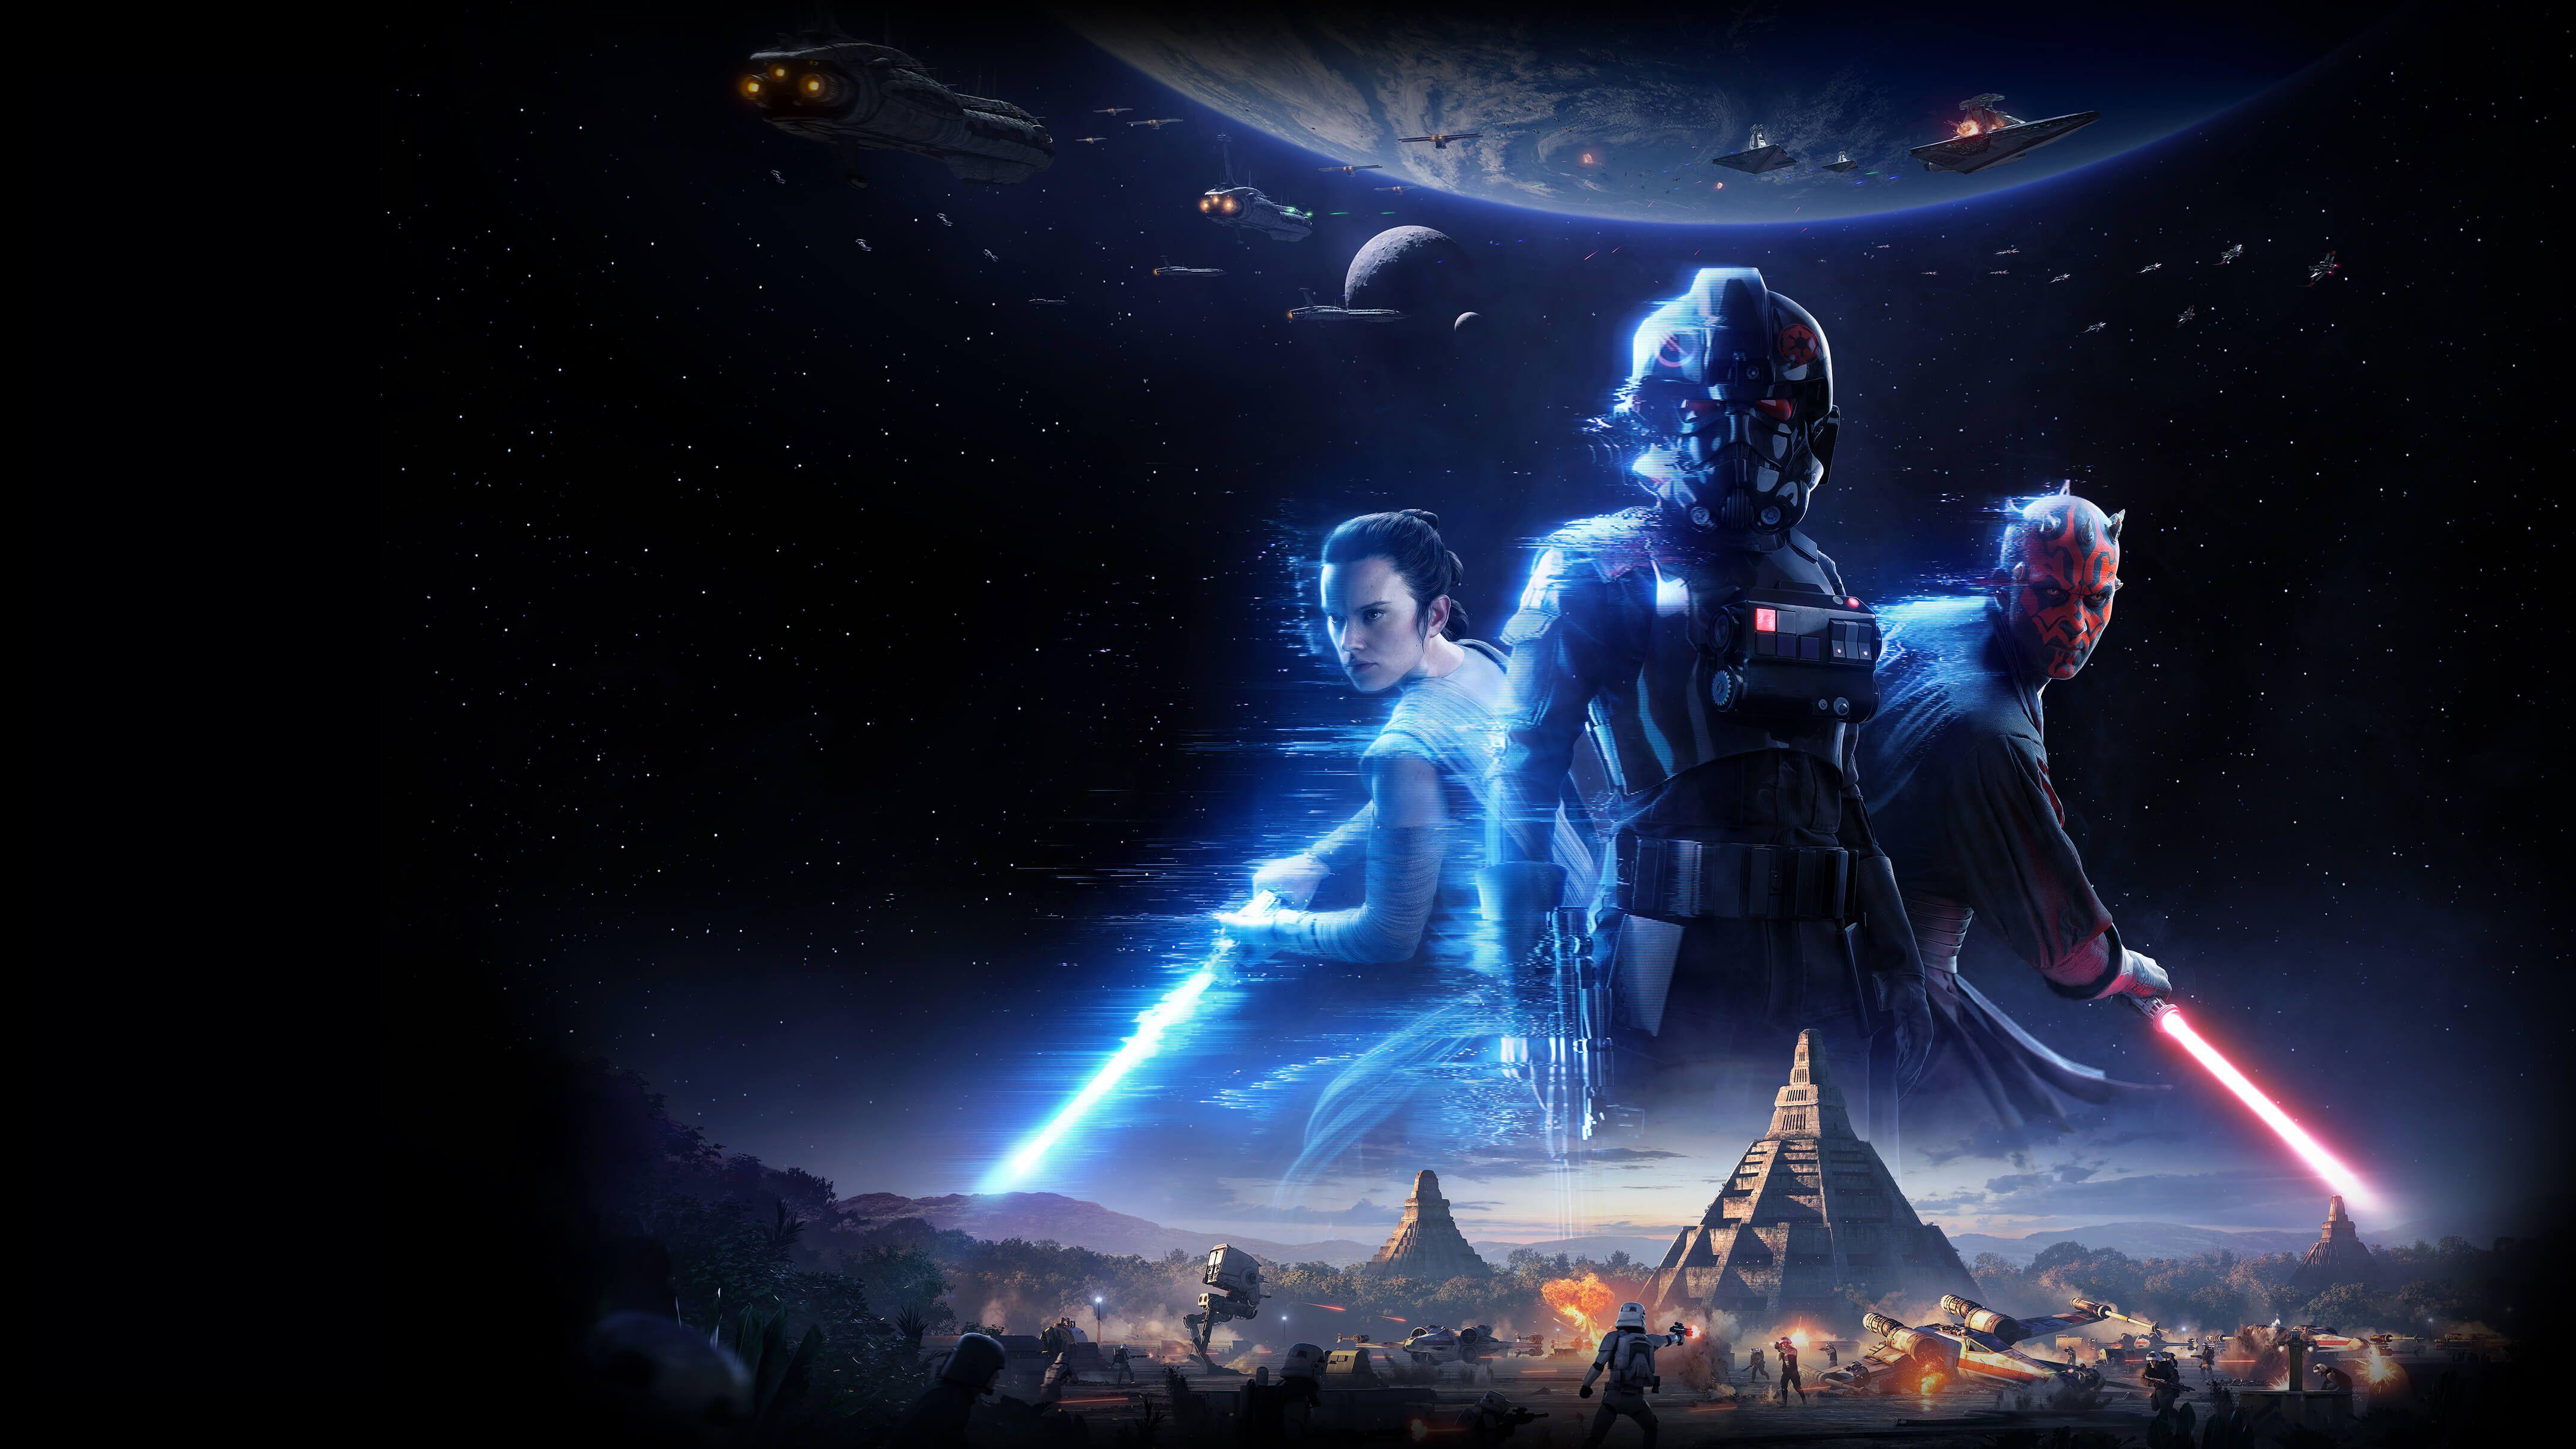 Star Wars Battlefront II (2017) 4k Ultra HD Wallpaper